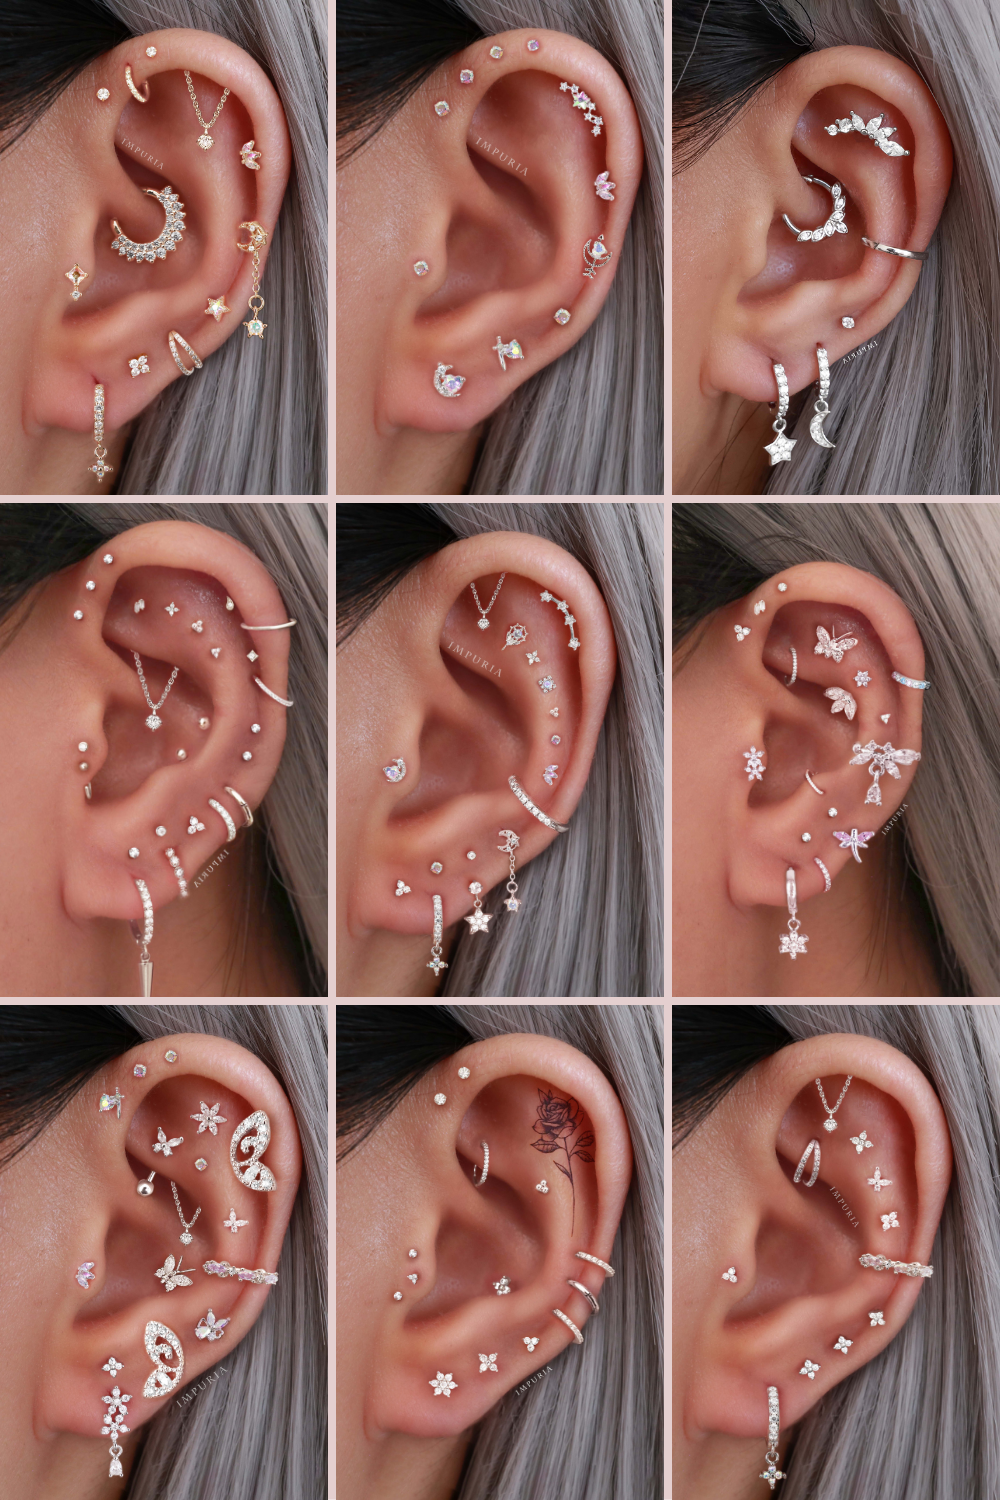 Cartilage Earrings & Ear Piercing Ideas for Women - www.Impuria.com